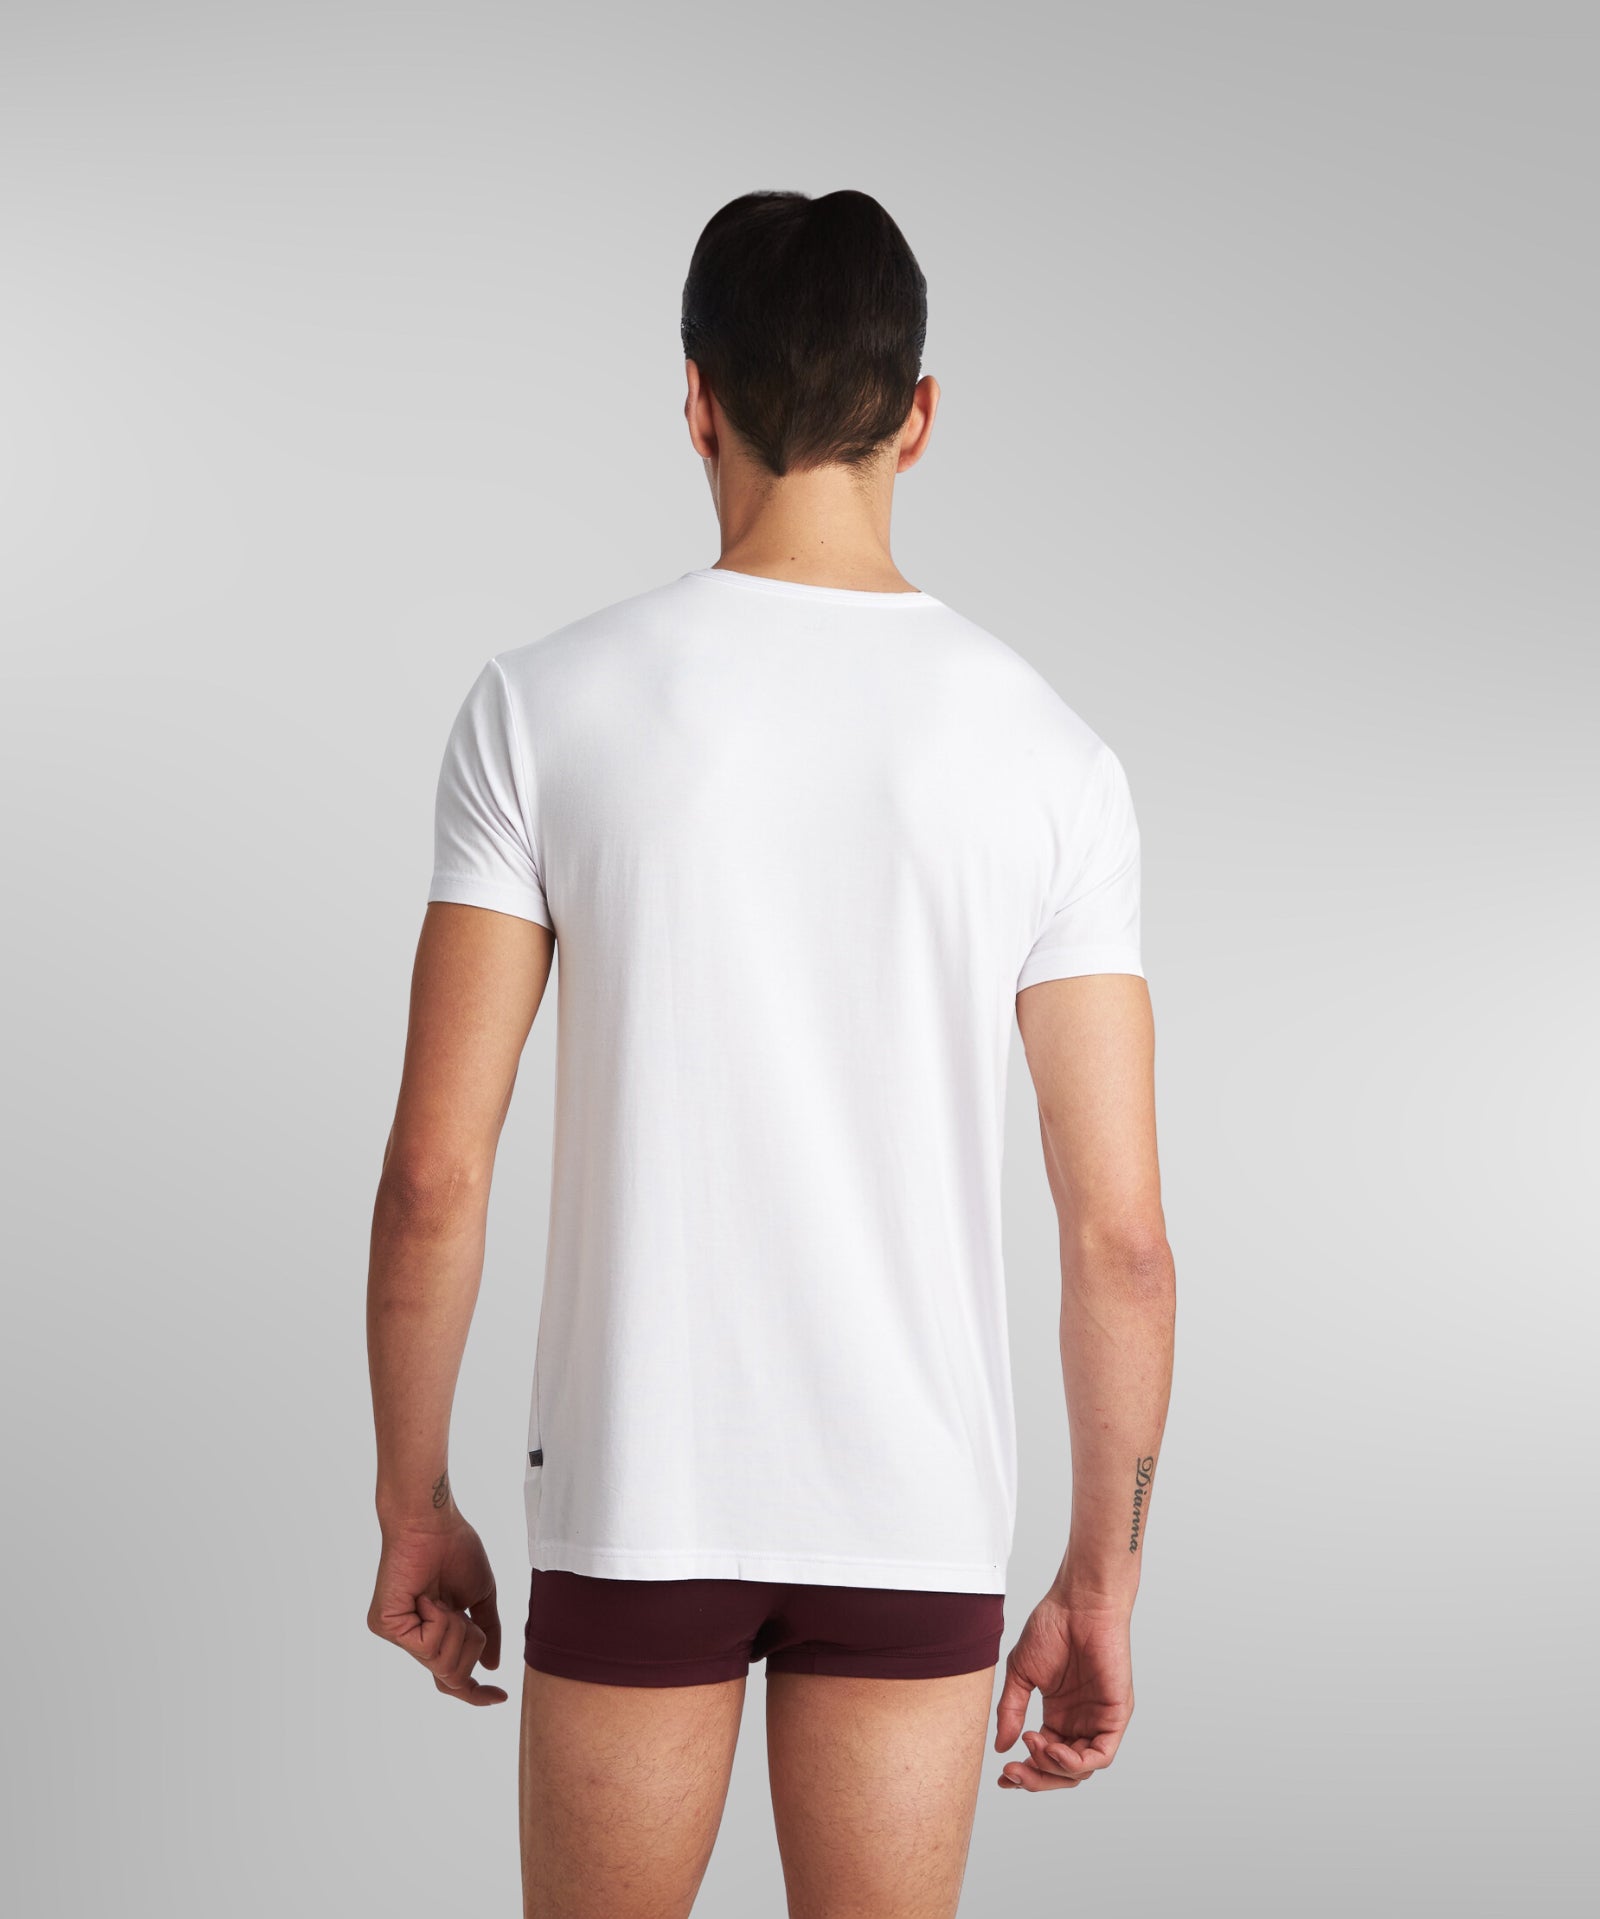 SilkCut V-Neck Men Undershirt in white